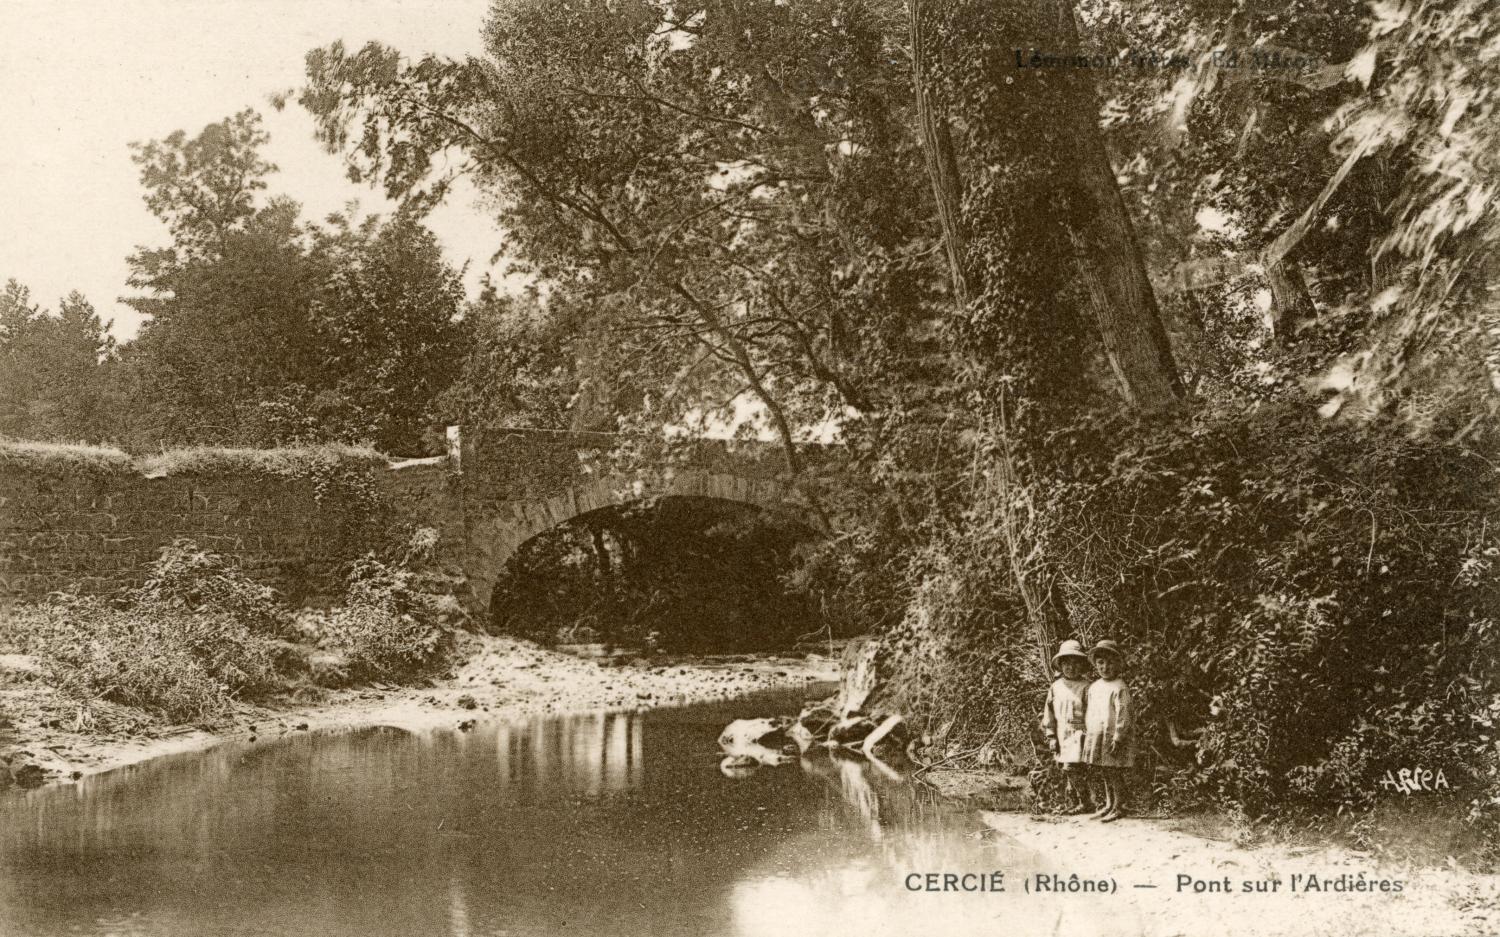 Cercié (Rhône). - Pont sur l'Ardières